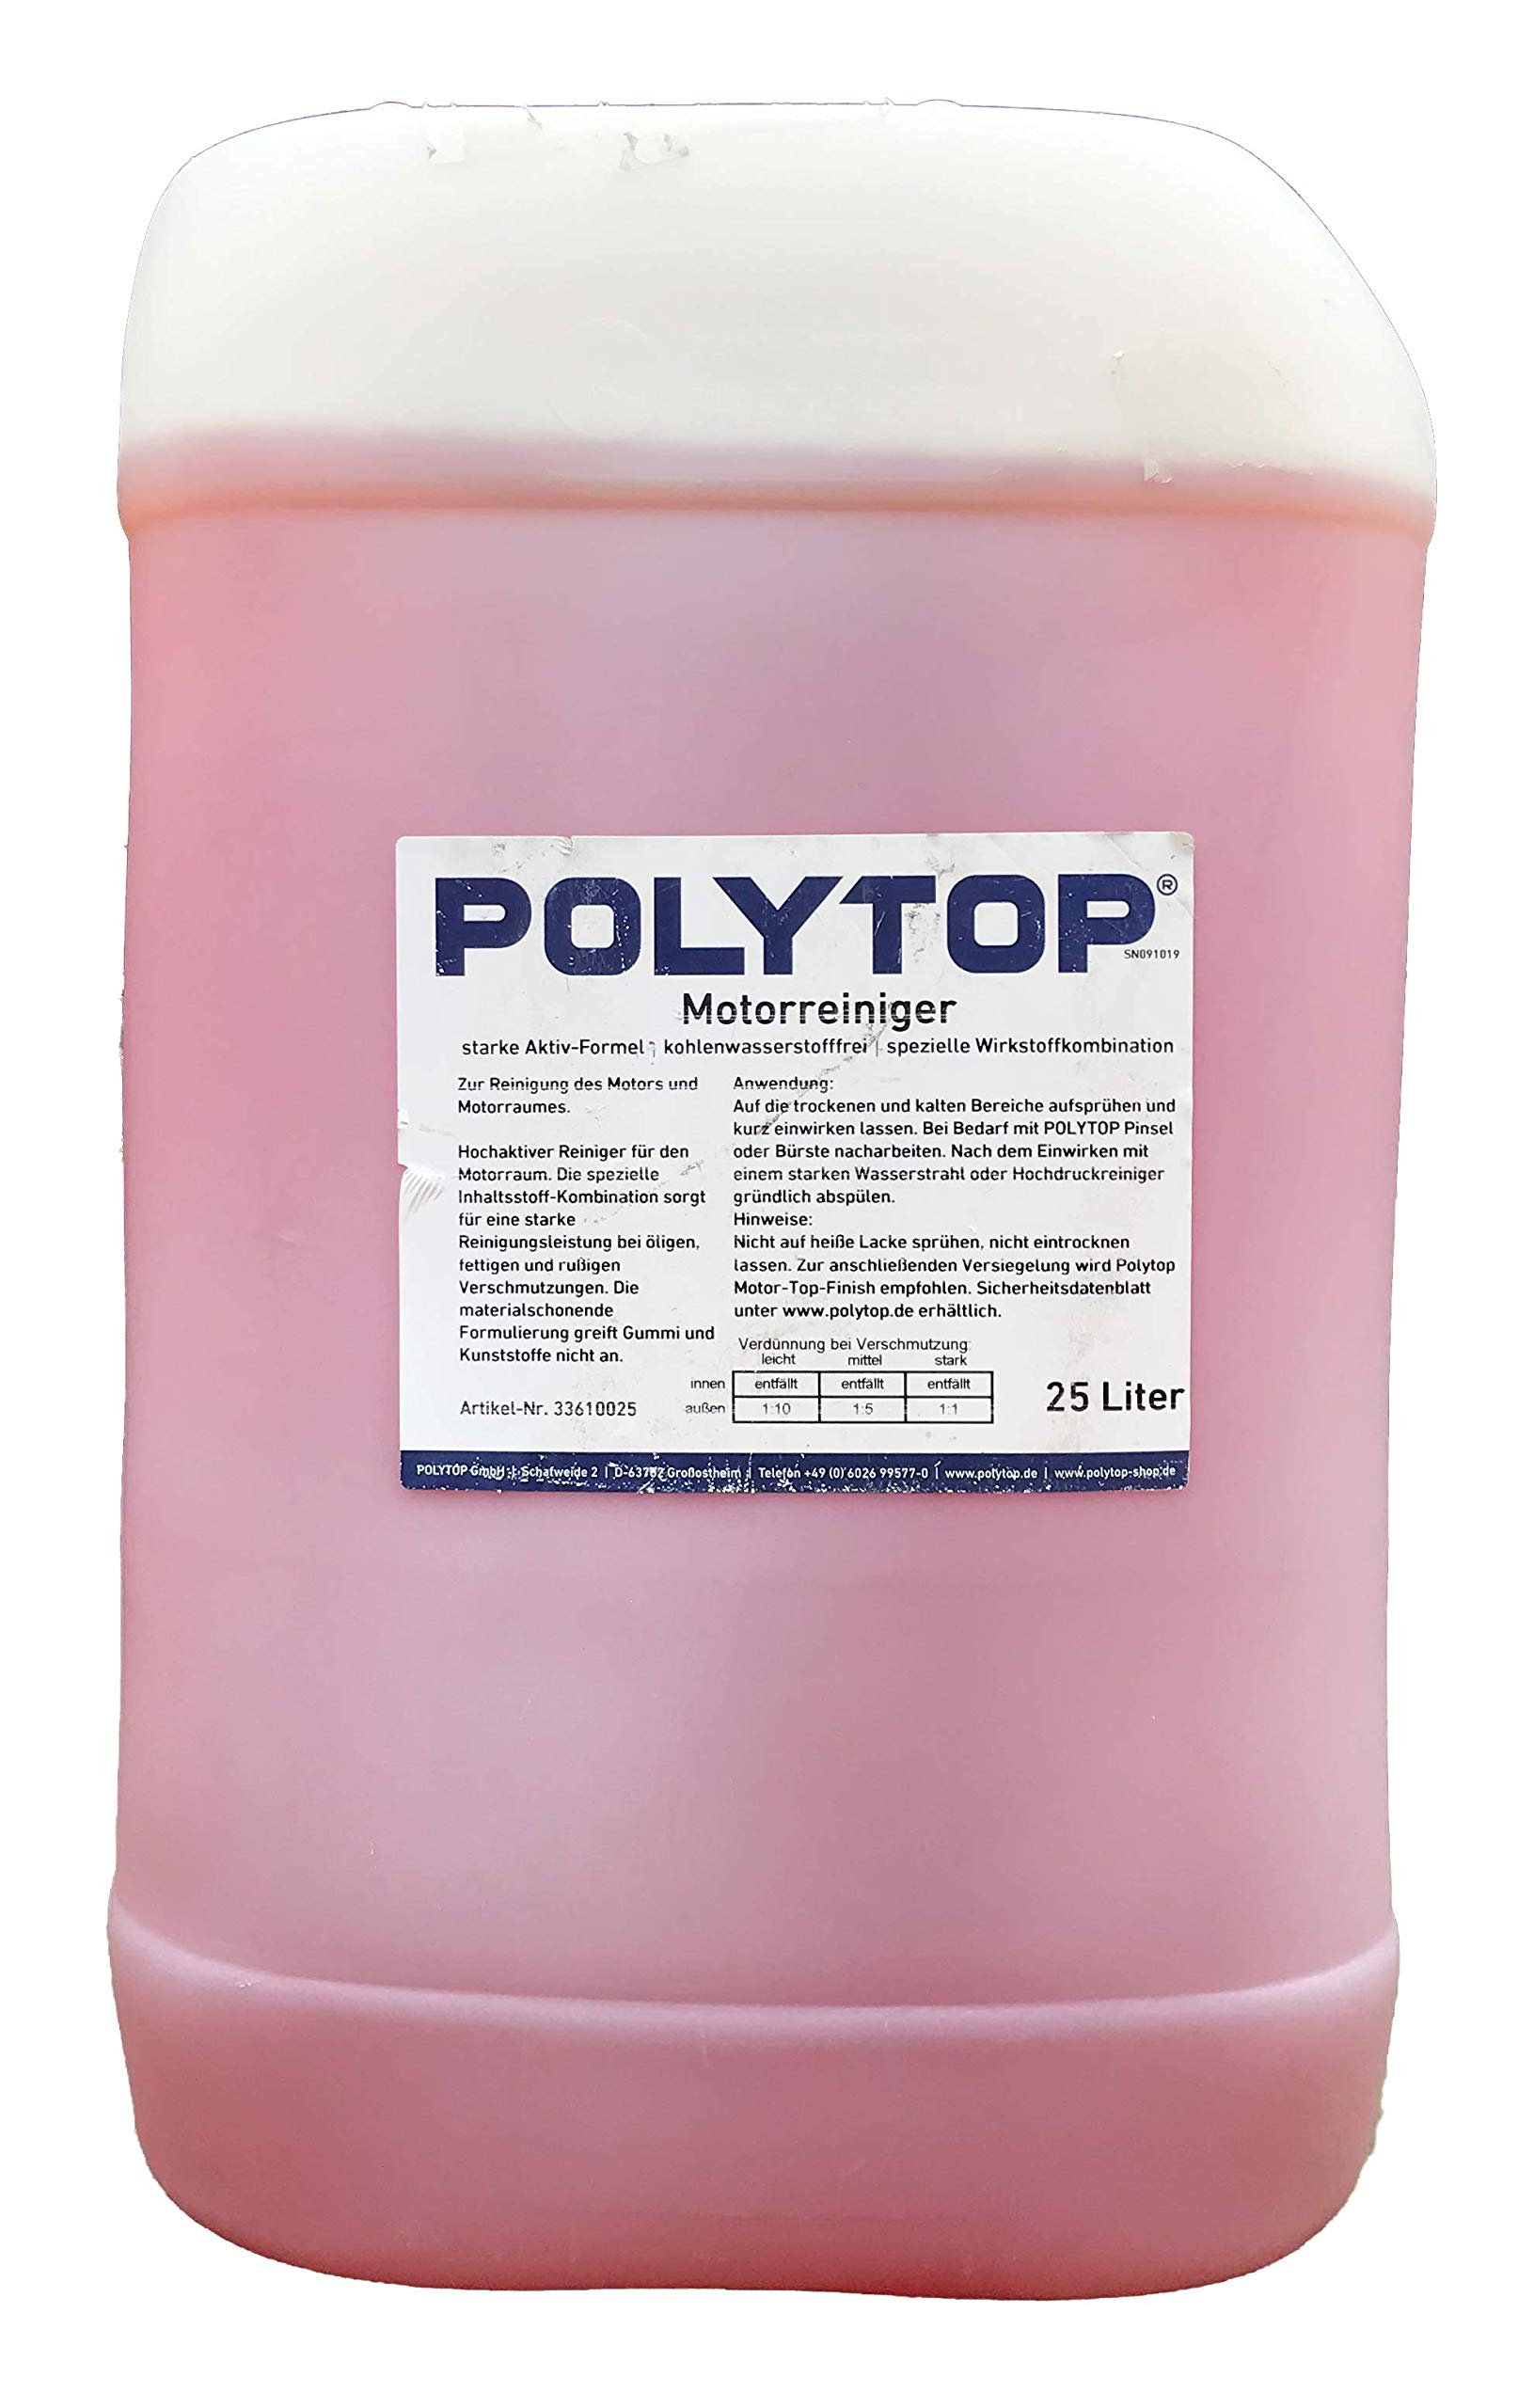 Polytop Motorreiniger Reiniger Motorraum 25 Liter von Polytop